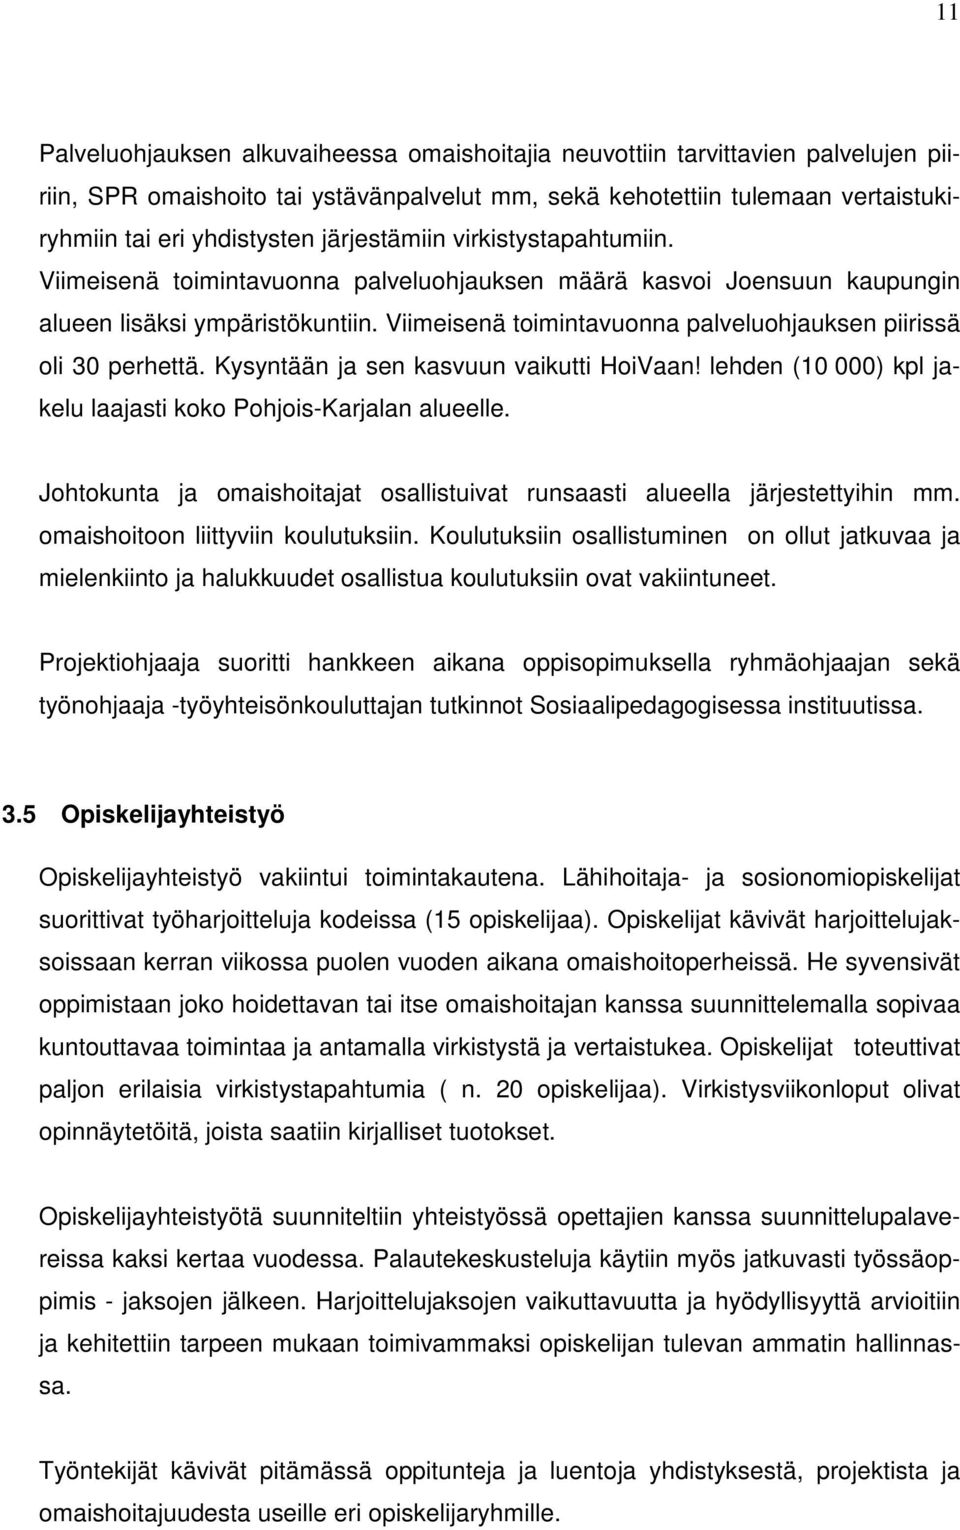 Viimeisenä toimintavuonna palveluohjauksen piirissä oli 30 perhettä. Kysyntään ja sen kasvuun vaikutti HoiVaan! lehden (10 000) kpl jakelu laajasti koko Pohjois-Karjalan alueelle.